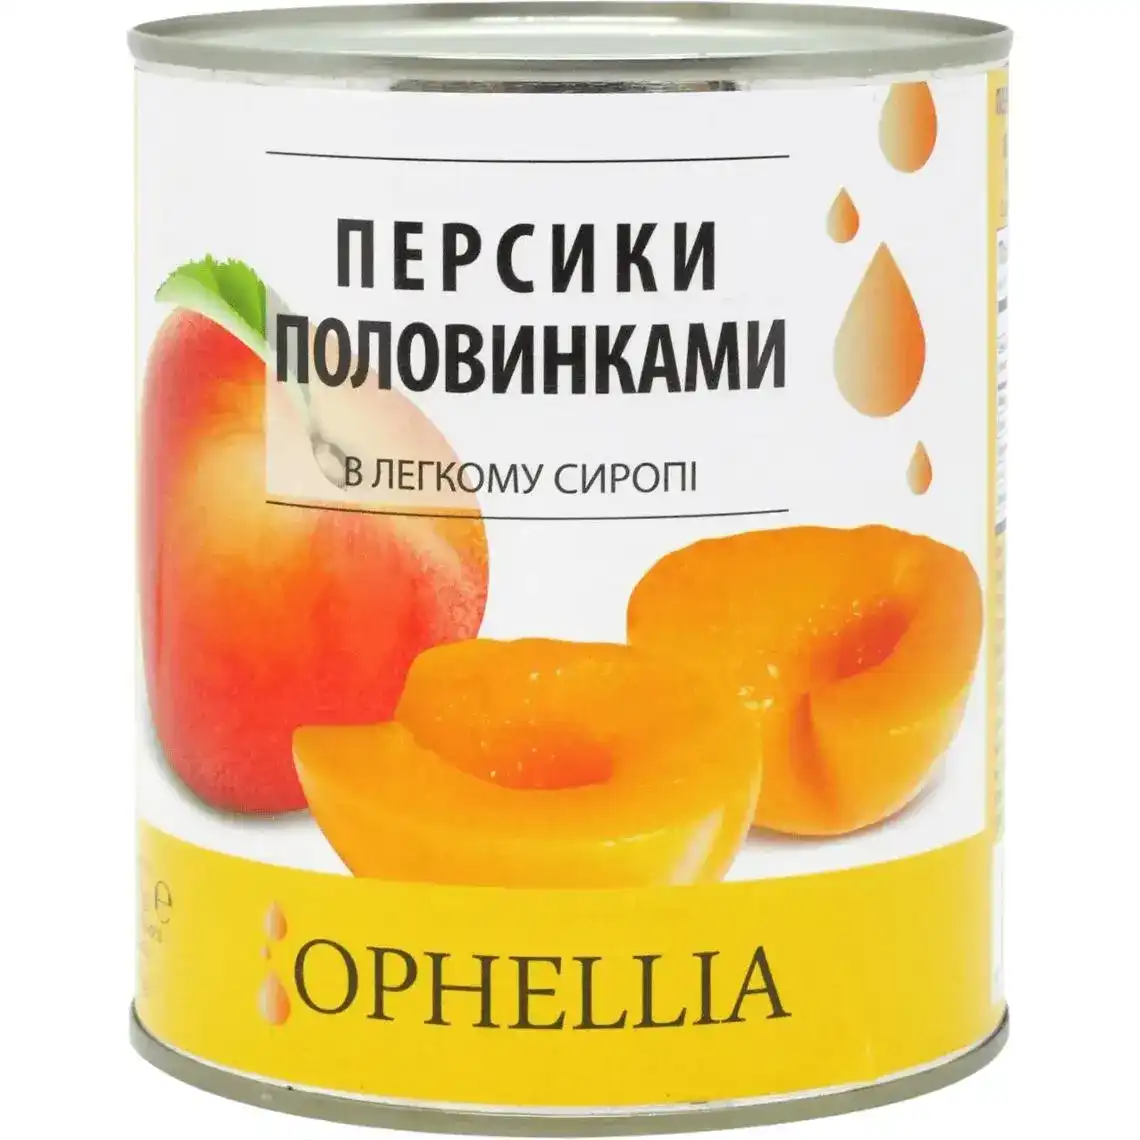 Персики Ophellia консервовані 850 мл